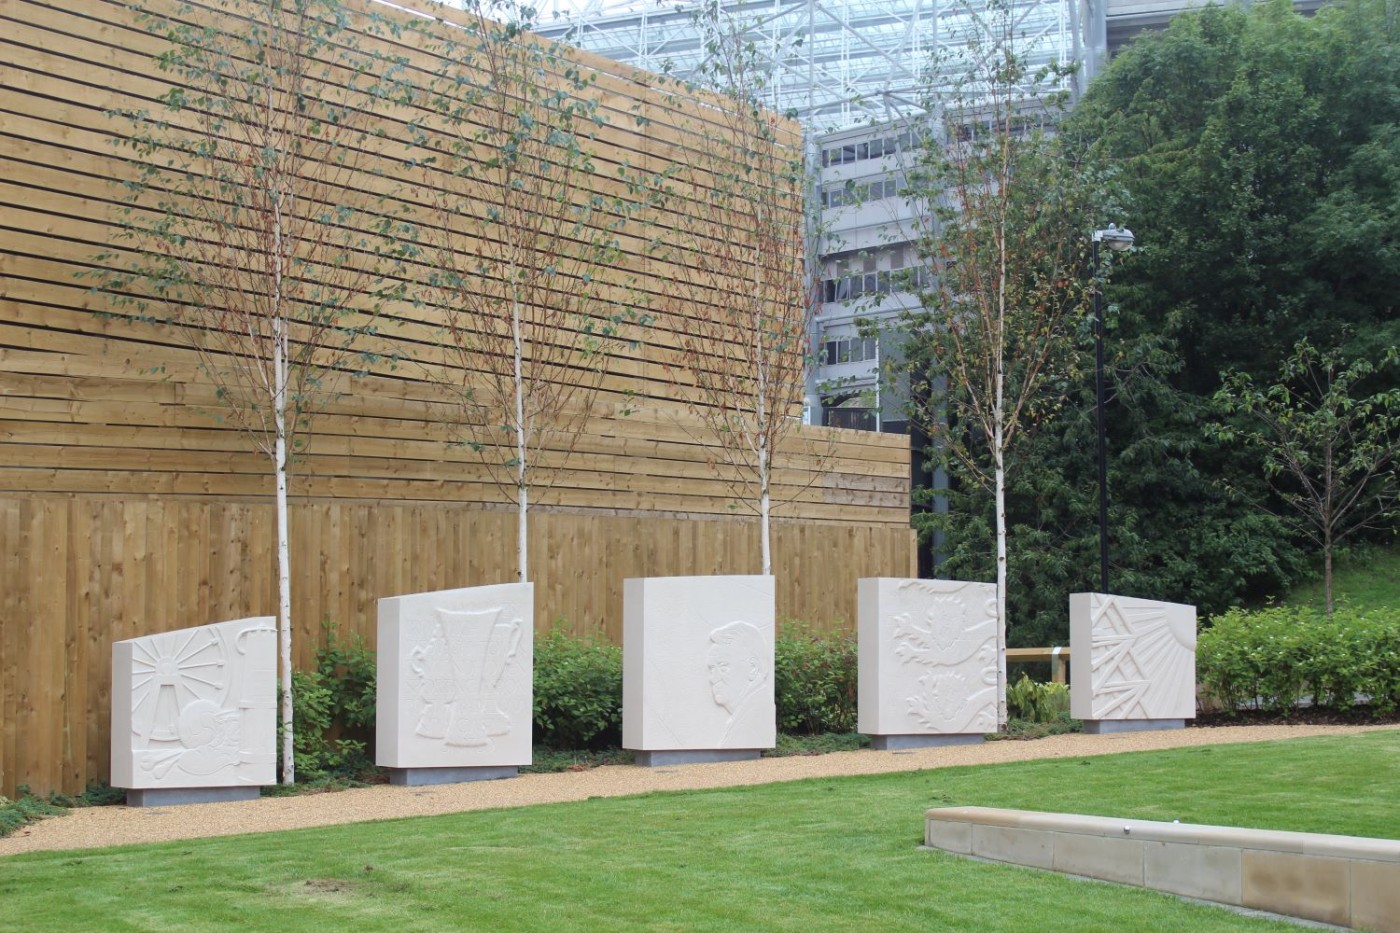 The sculptures at the Sir Bobby Robson Memorial Garden